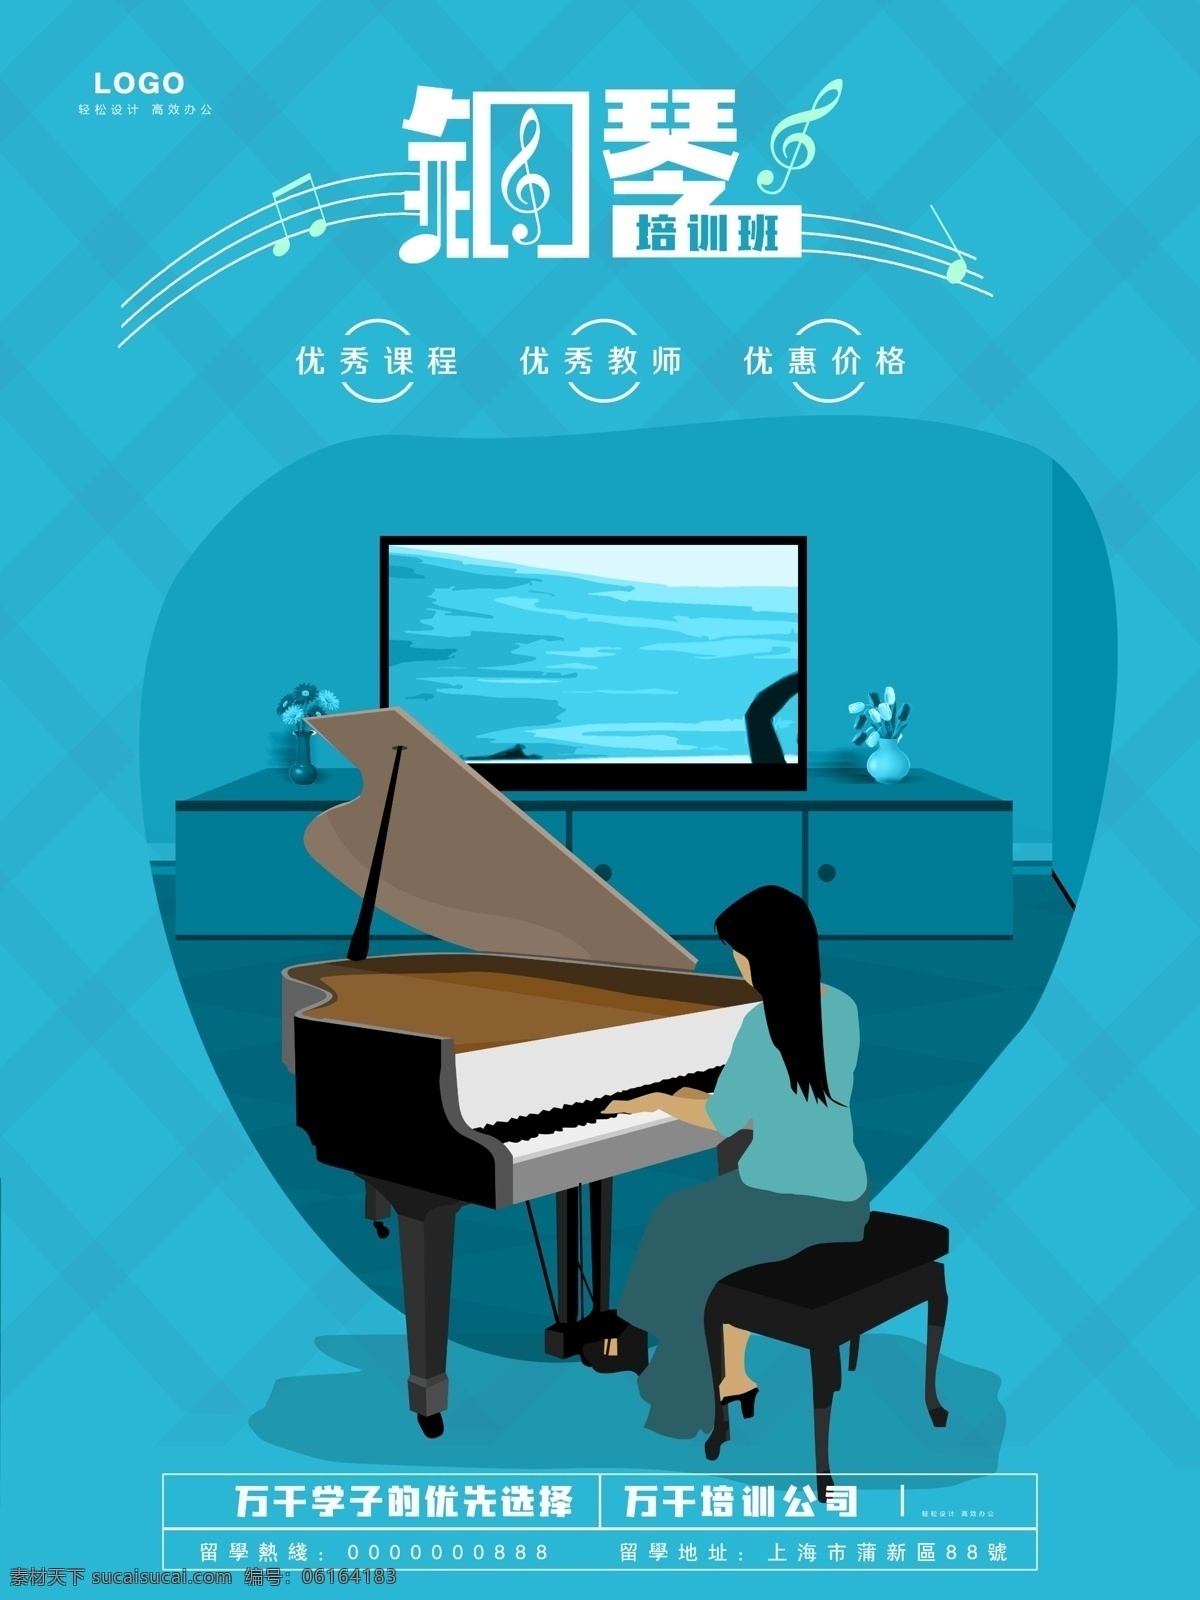 钢琴海报 钢琴培训 钢琴宣传单 钢琴广告 钢琴招生 钢琴招生海报 钢琴培训招生 钢琴班招生 钢琴教学 钢琴班教学 教育机构 分层